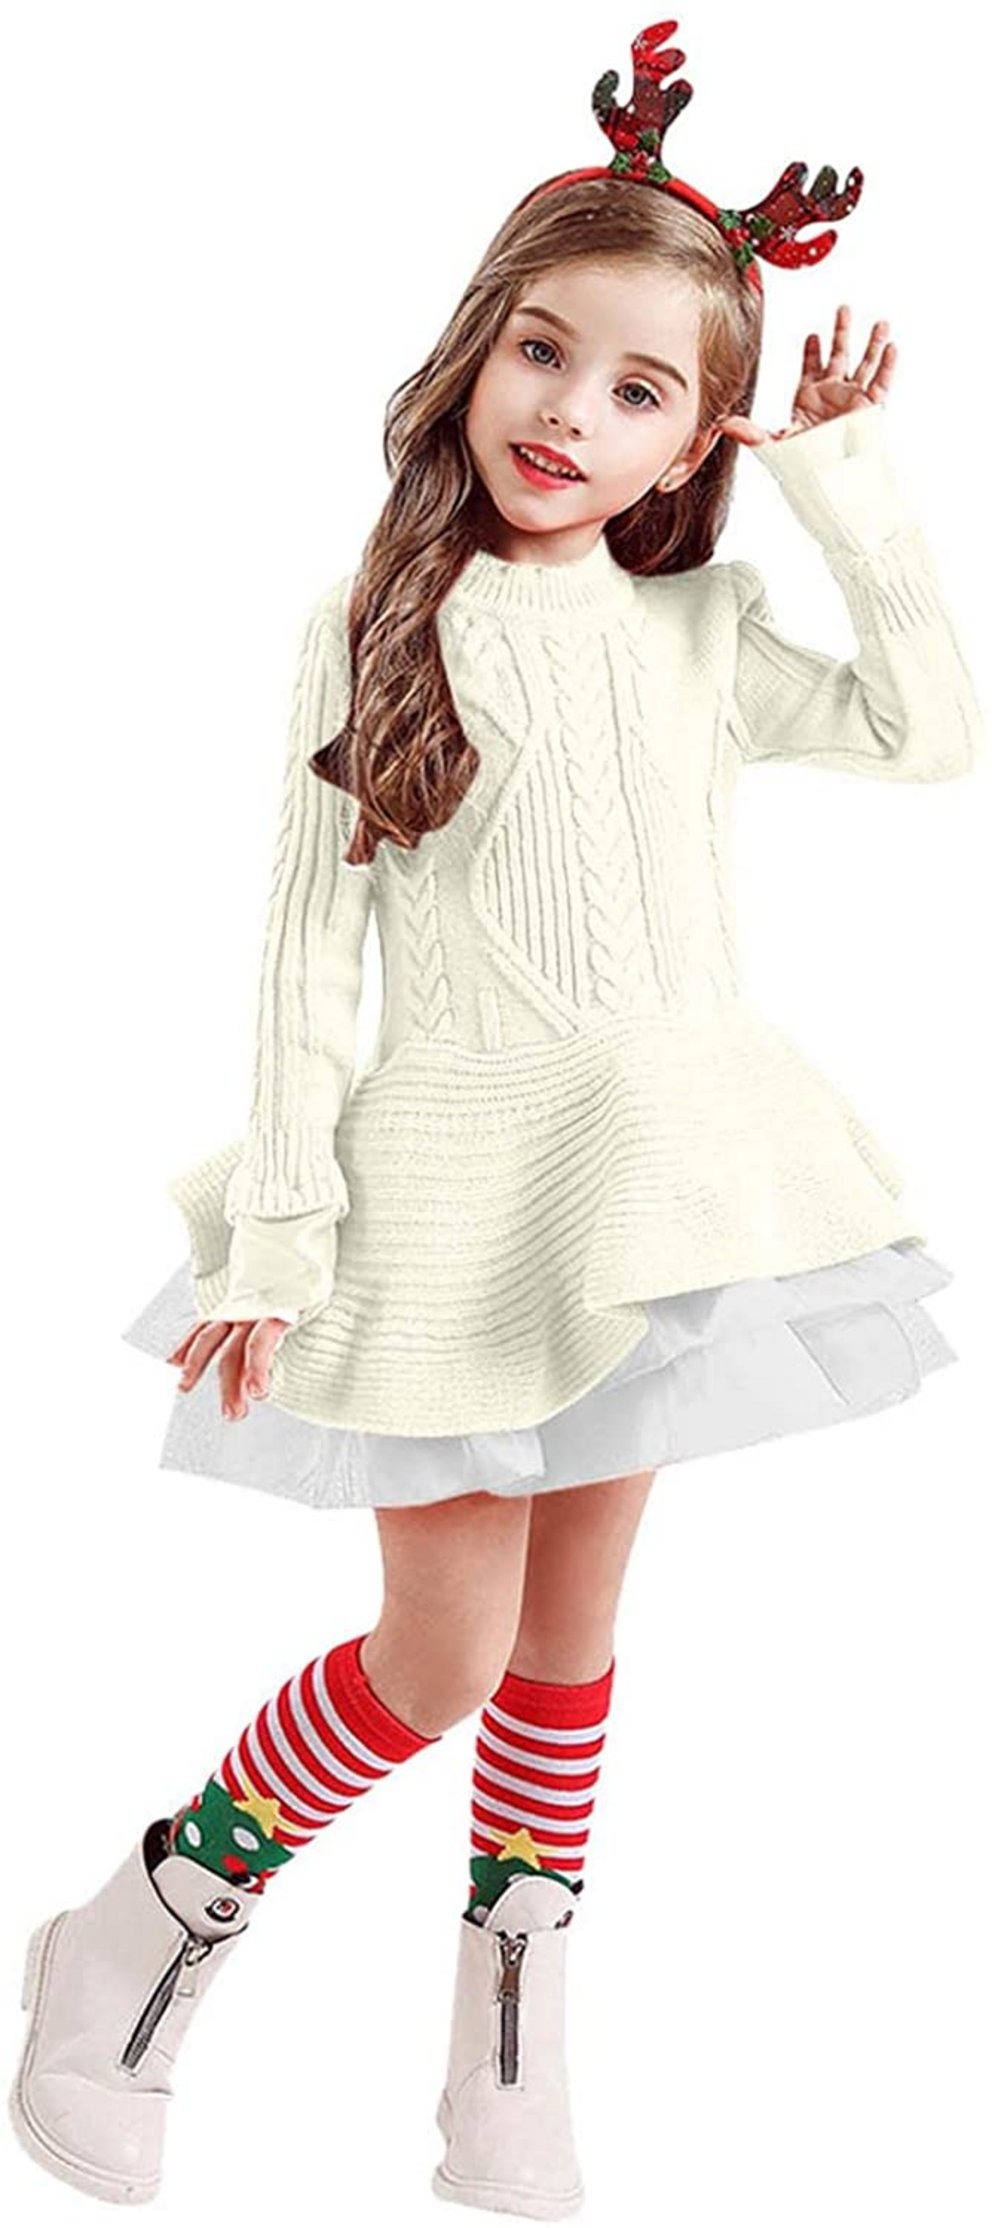 Taufkleider Mädchen: Hochwertiges Casaul-Kleid mit moderner Strickoptik